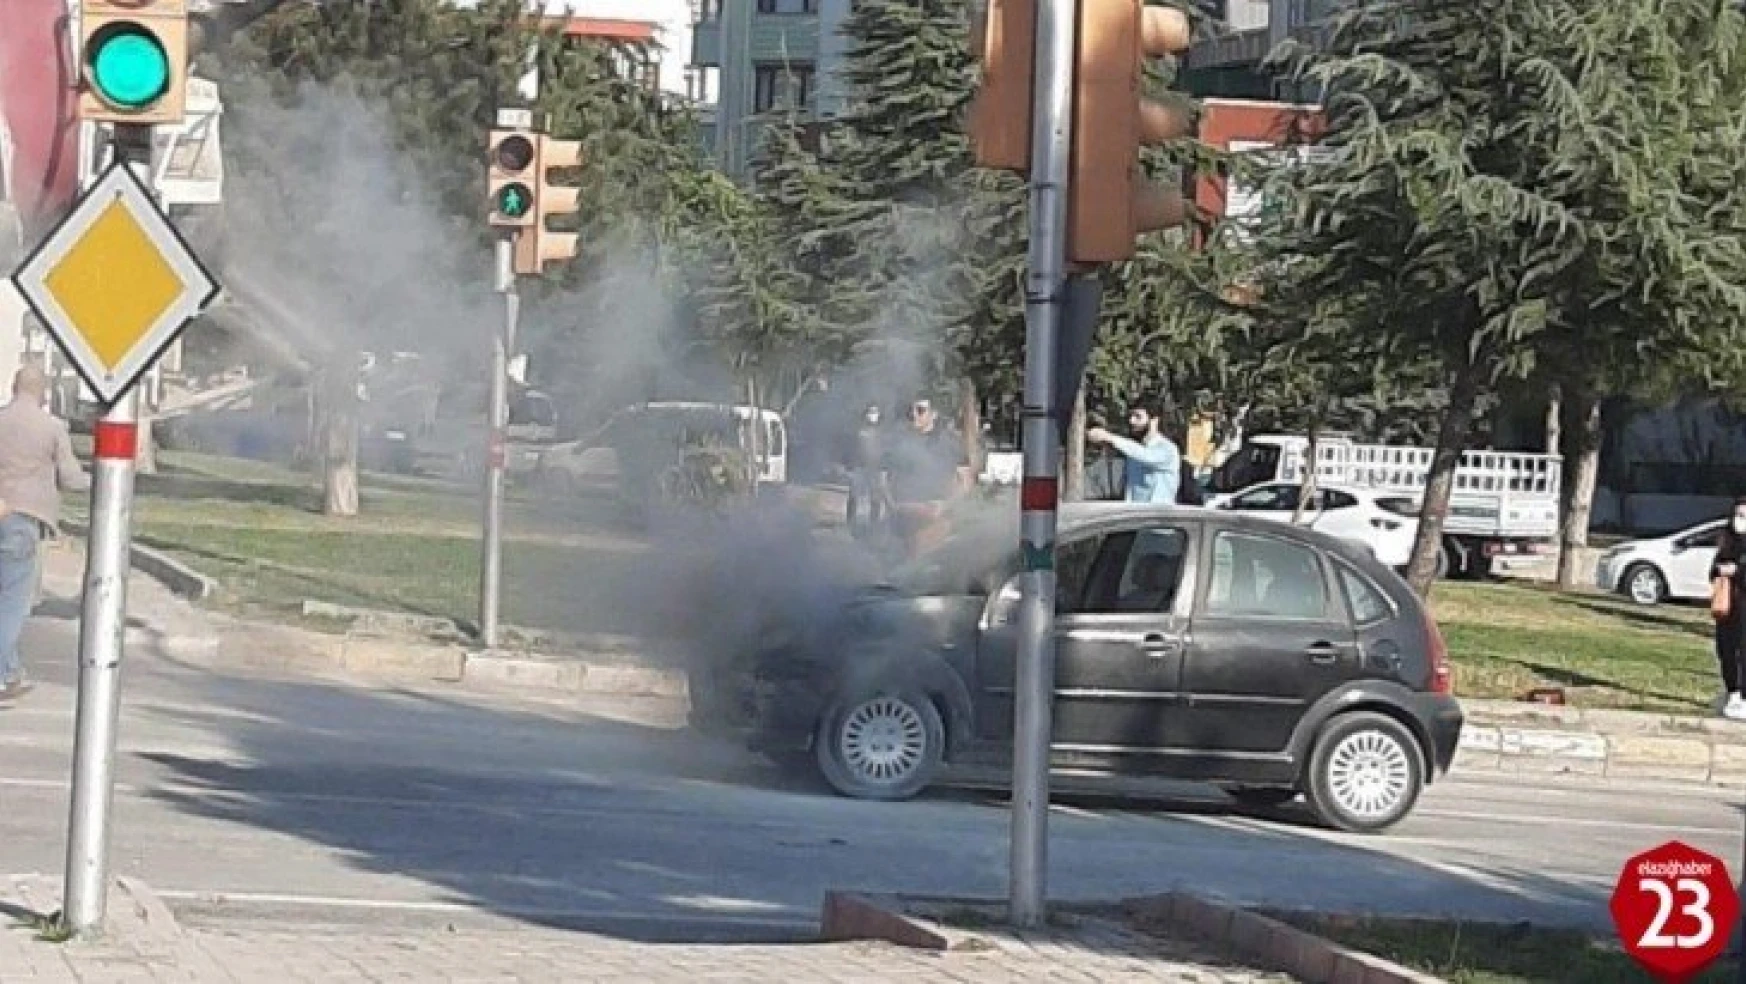 Elazığ'da araç yangını